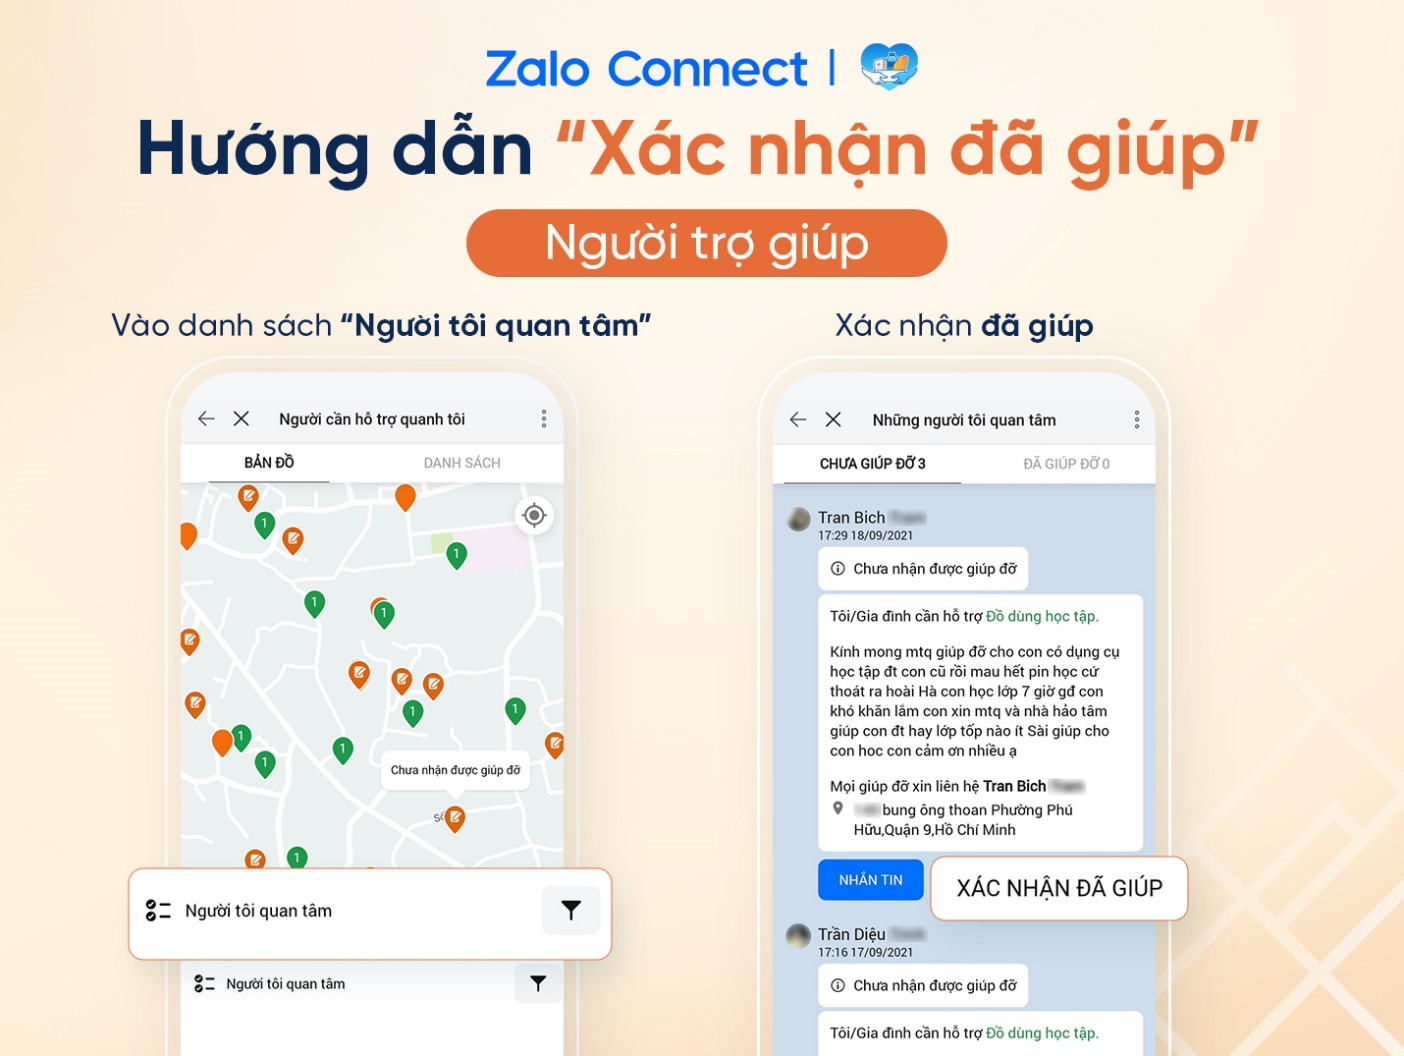 Hỗ trợ đồ dùng học tập cho học sinh qua Zalo Connect - Ảnh 3.